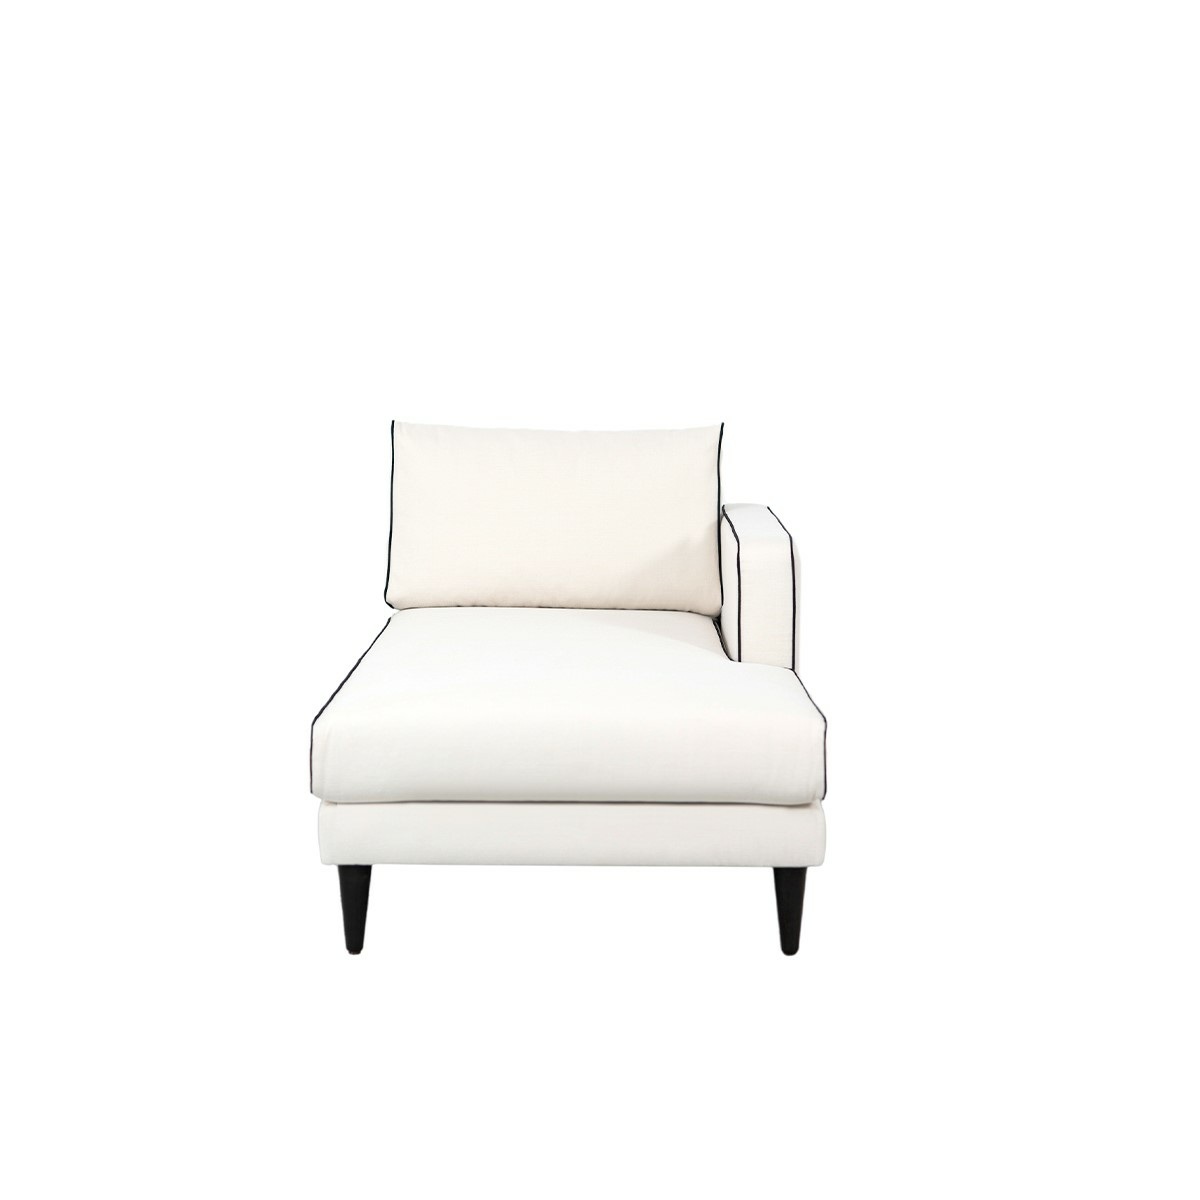 Noa sofa - Right armrest, L150 x P80 x H75 cm - Cotton - image 2